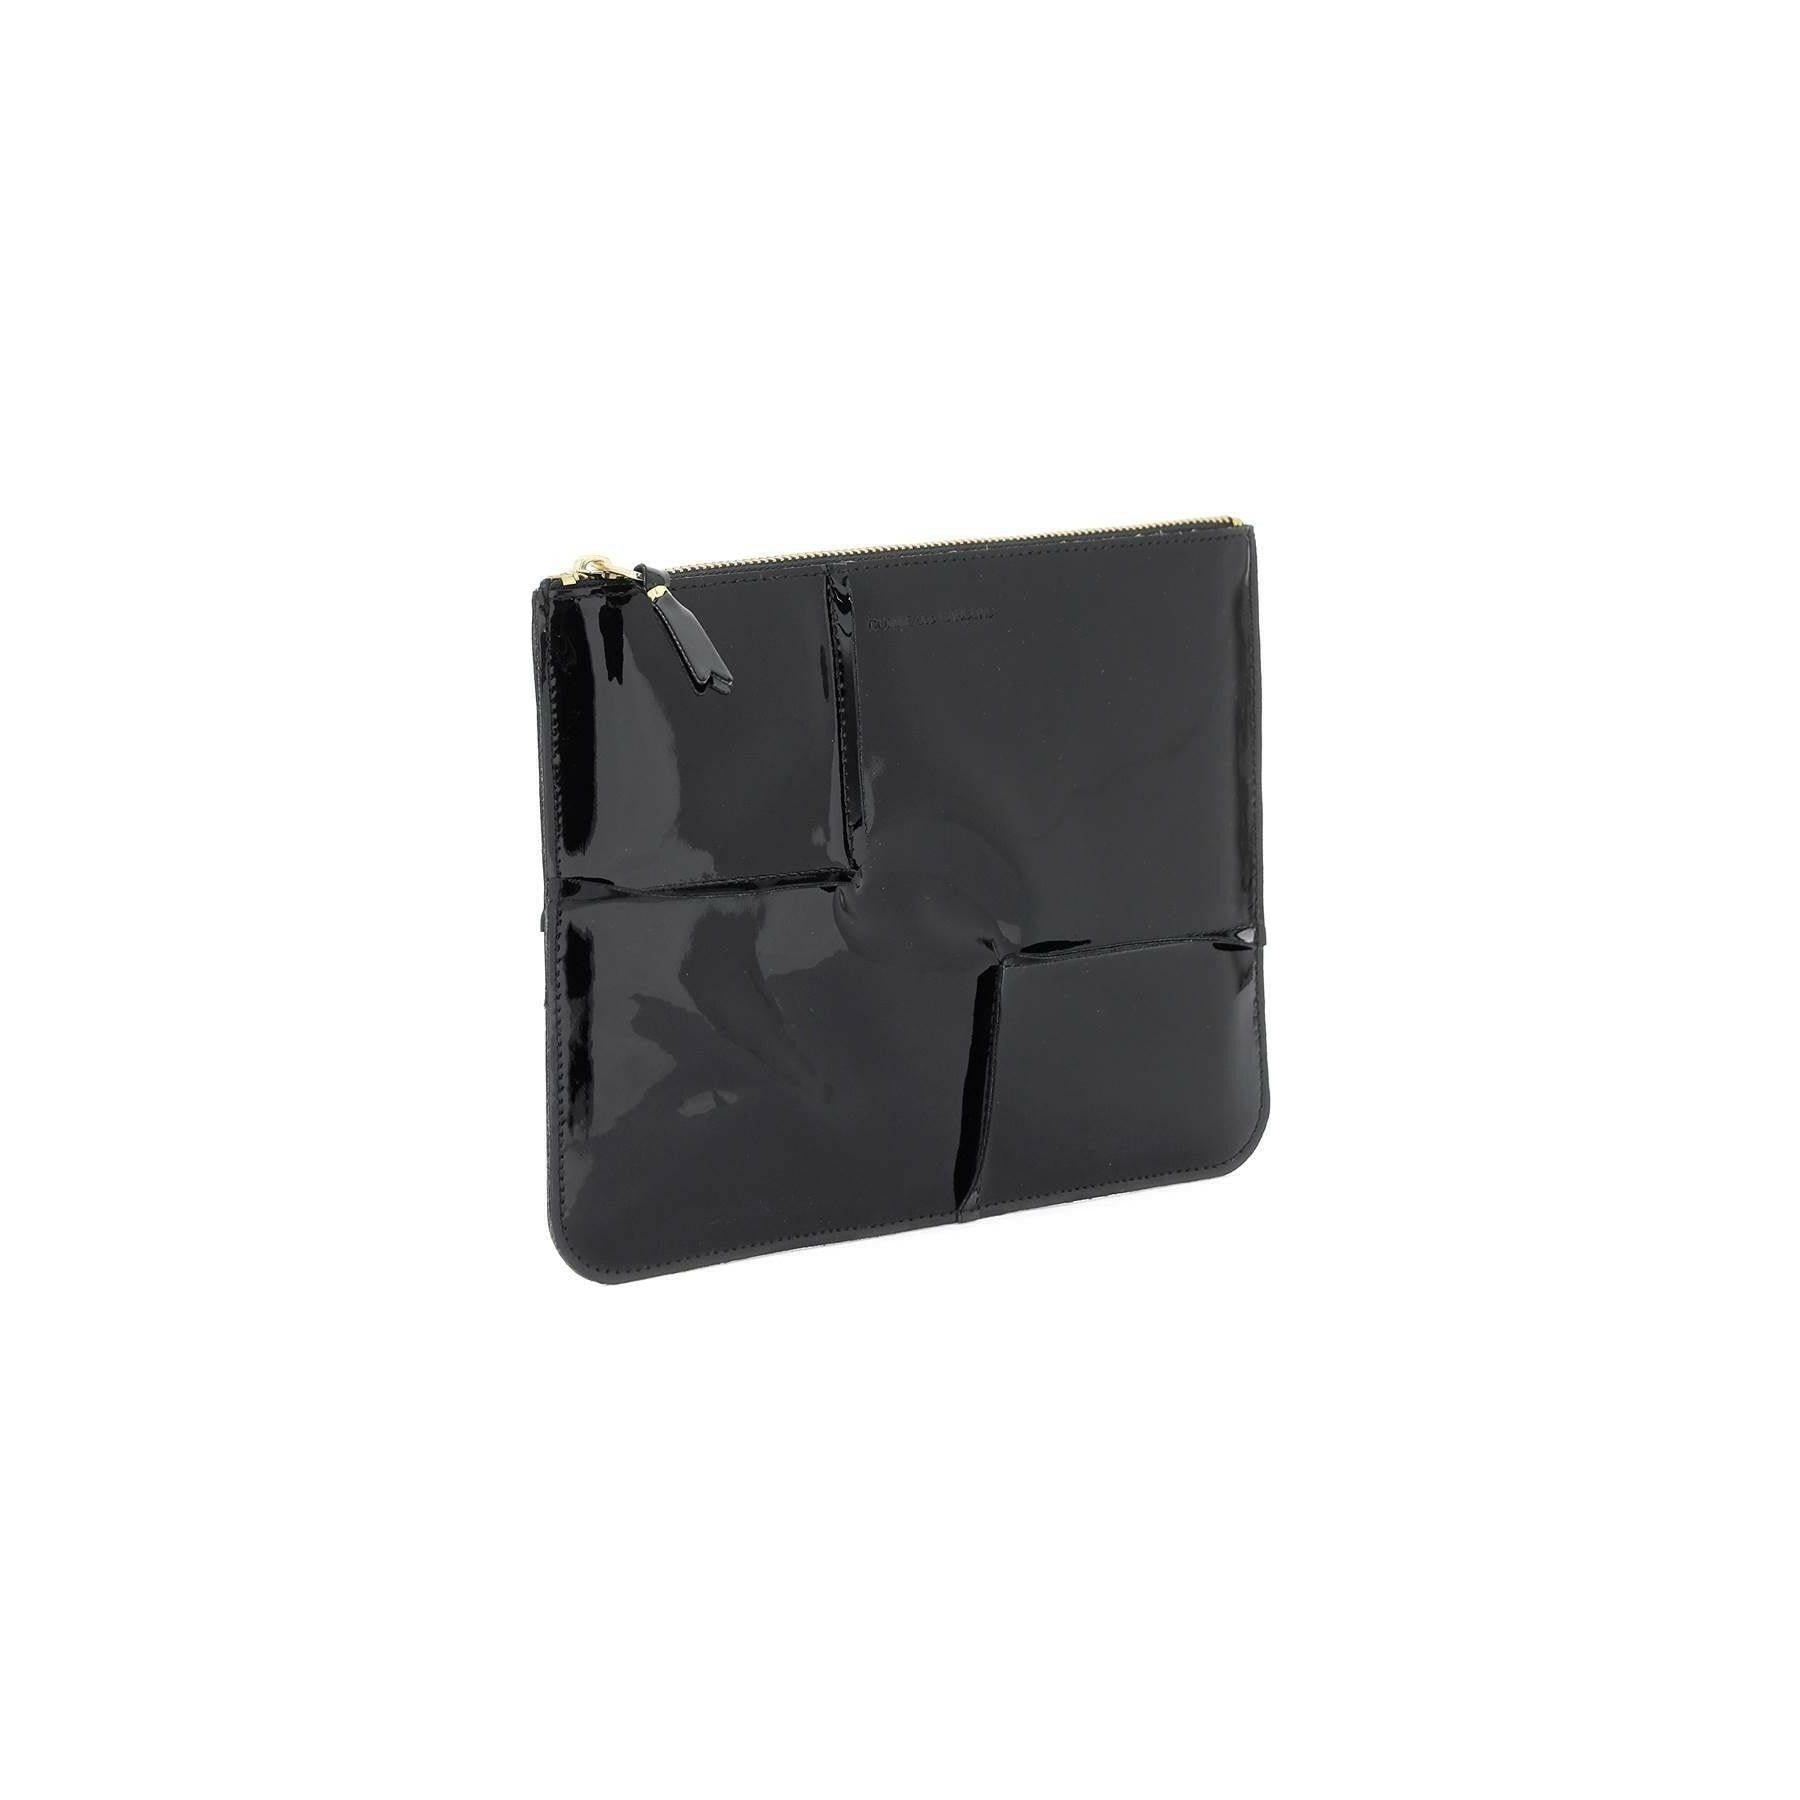 Comme des Garçons Black Patent Leather Reversed Hem Zip Pouch COMME DES GARCONS WALLET JOHN JULIA.